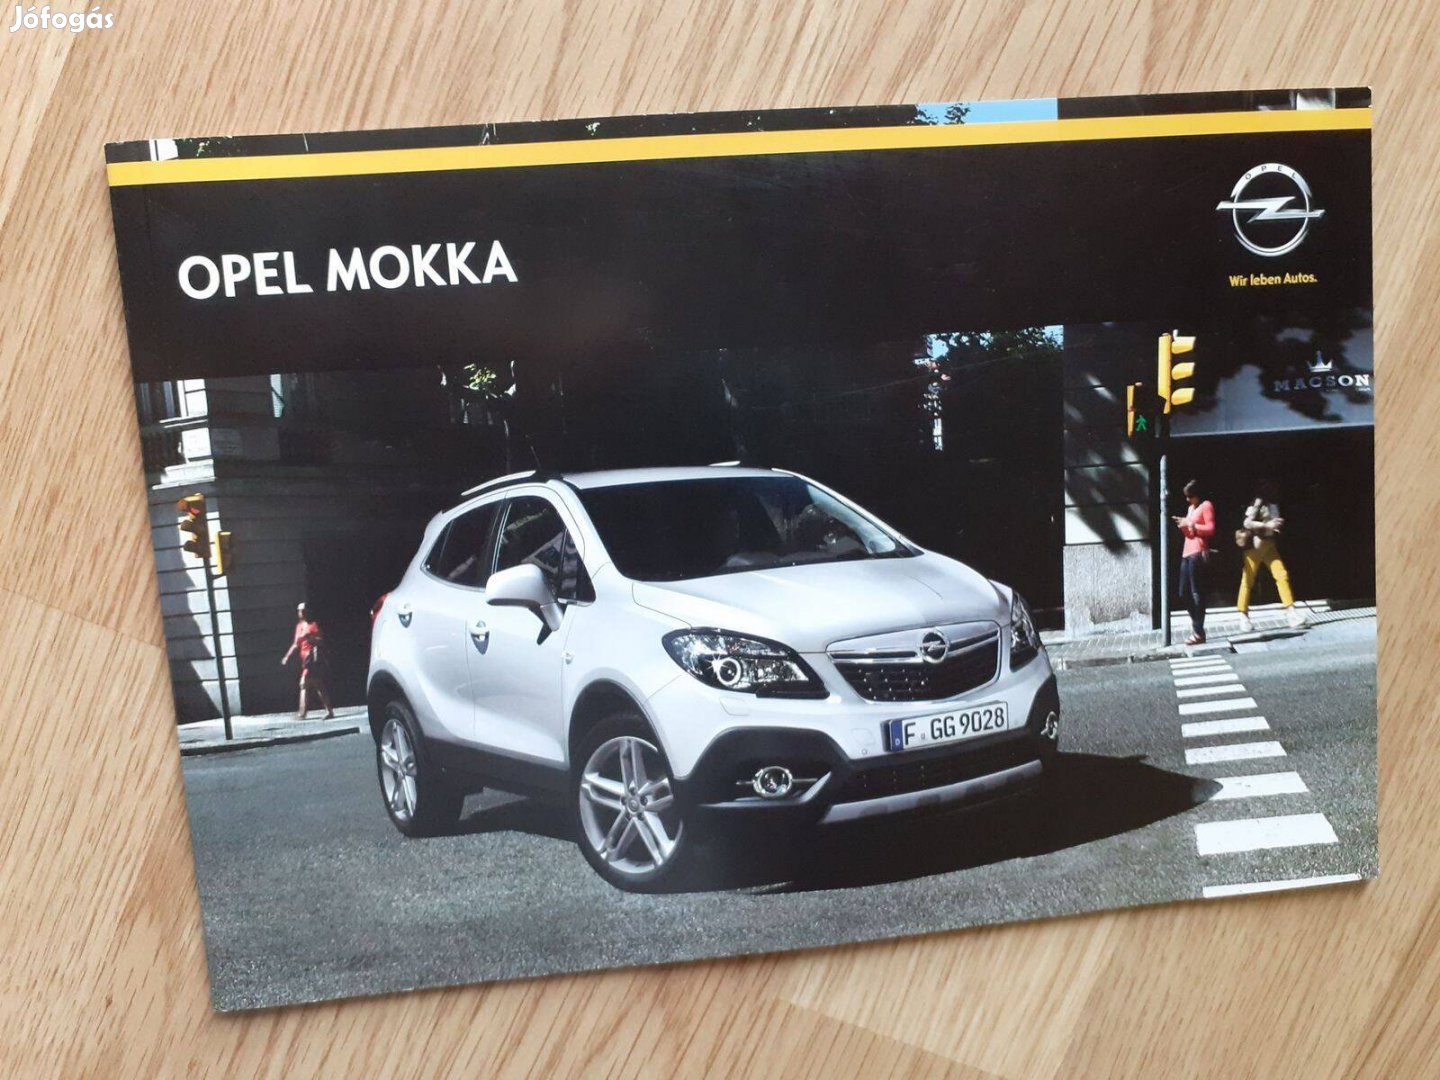 Opel Mokka prospektus - 2014, magyar nyelvű